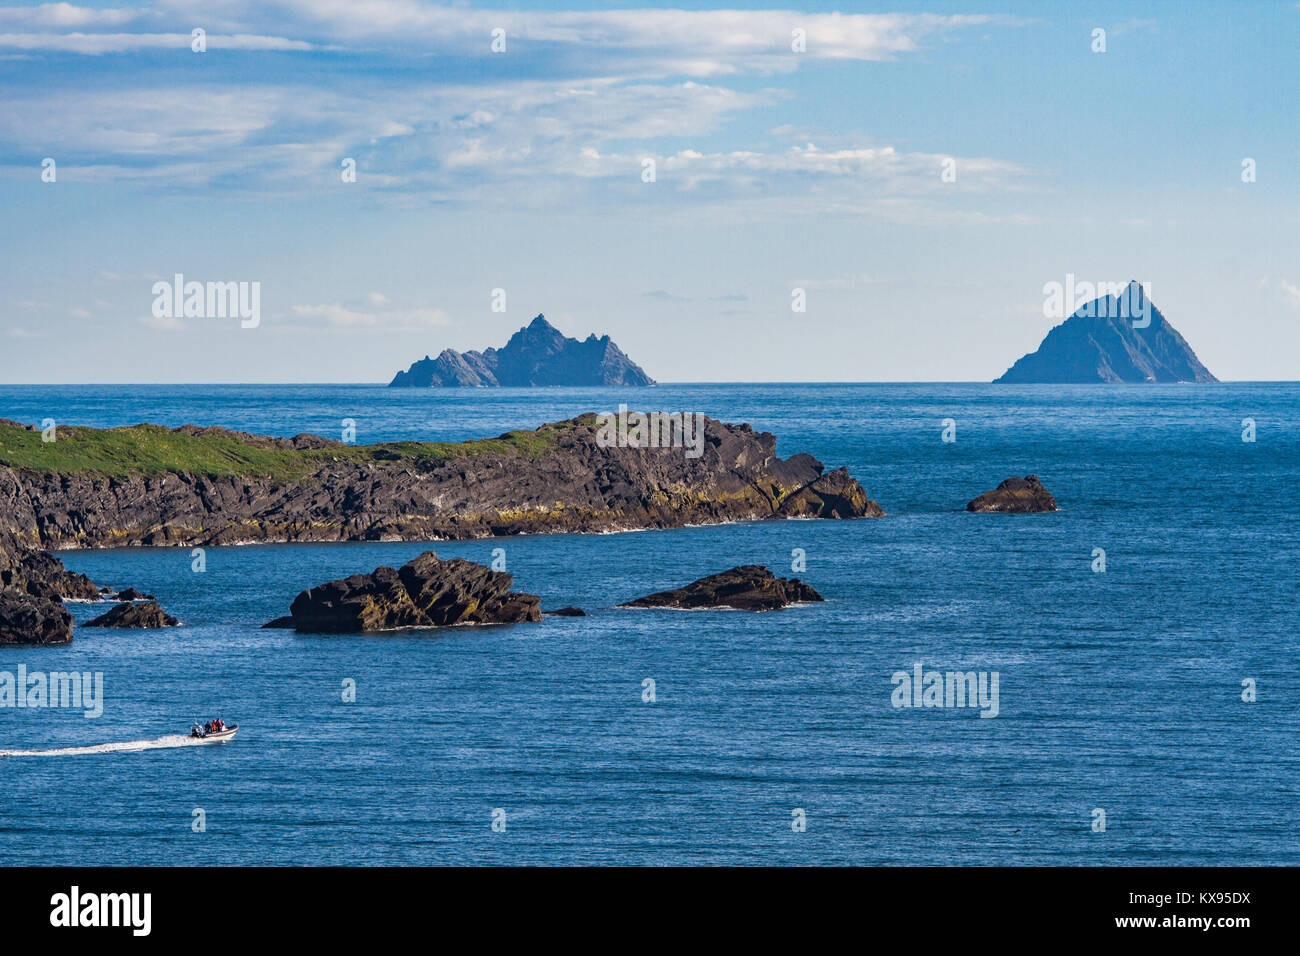 Die skelligs Inseln, Little Skellig und Skellig Michael, Inseln in der Nähe der Küste von Iveragh Halbinsel, County Kerry, Irland Stockfoto